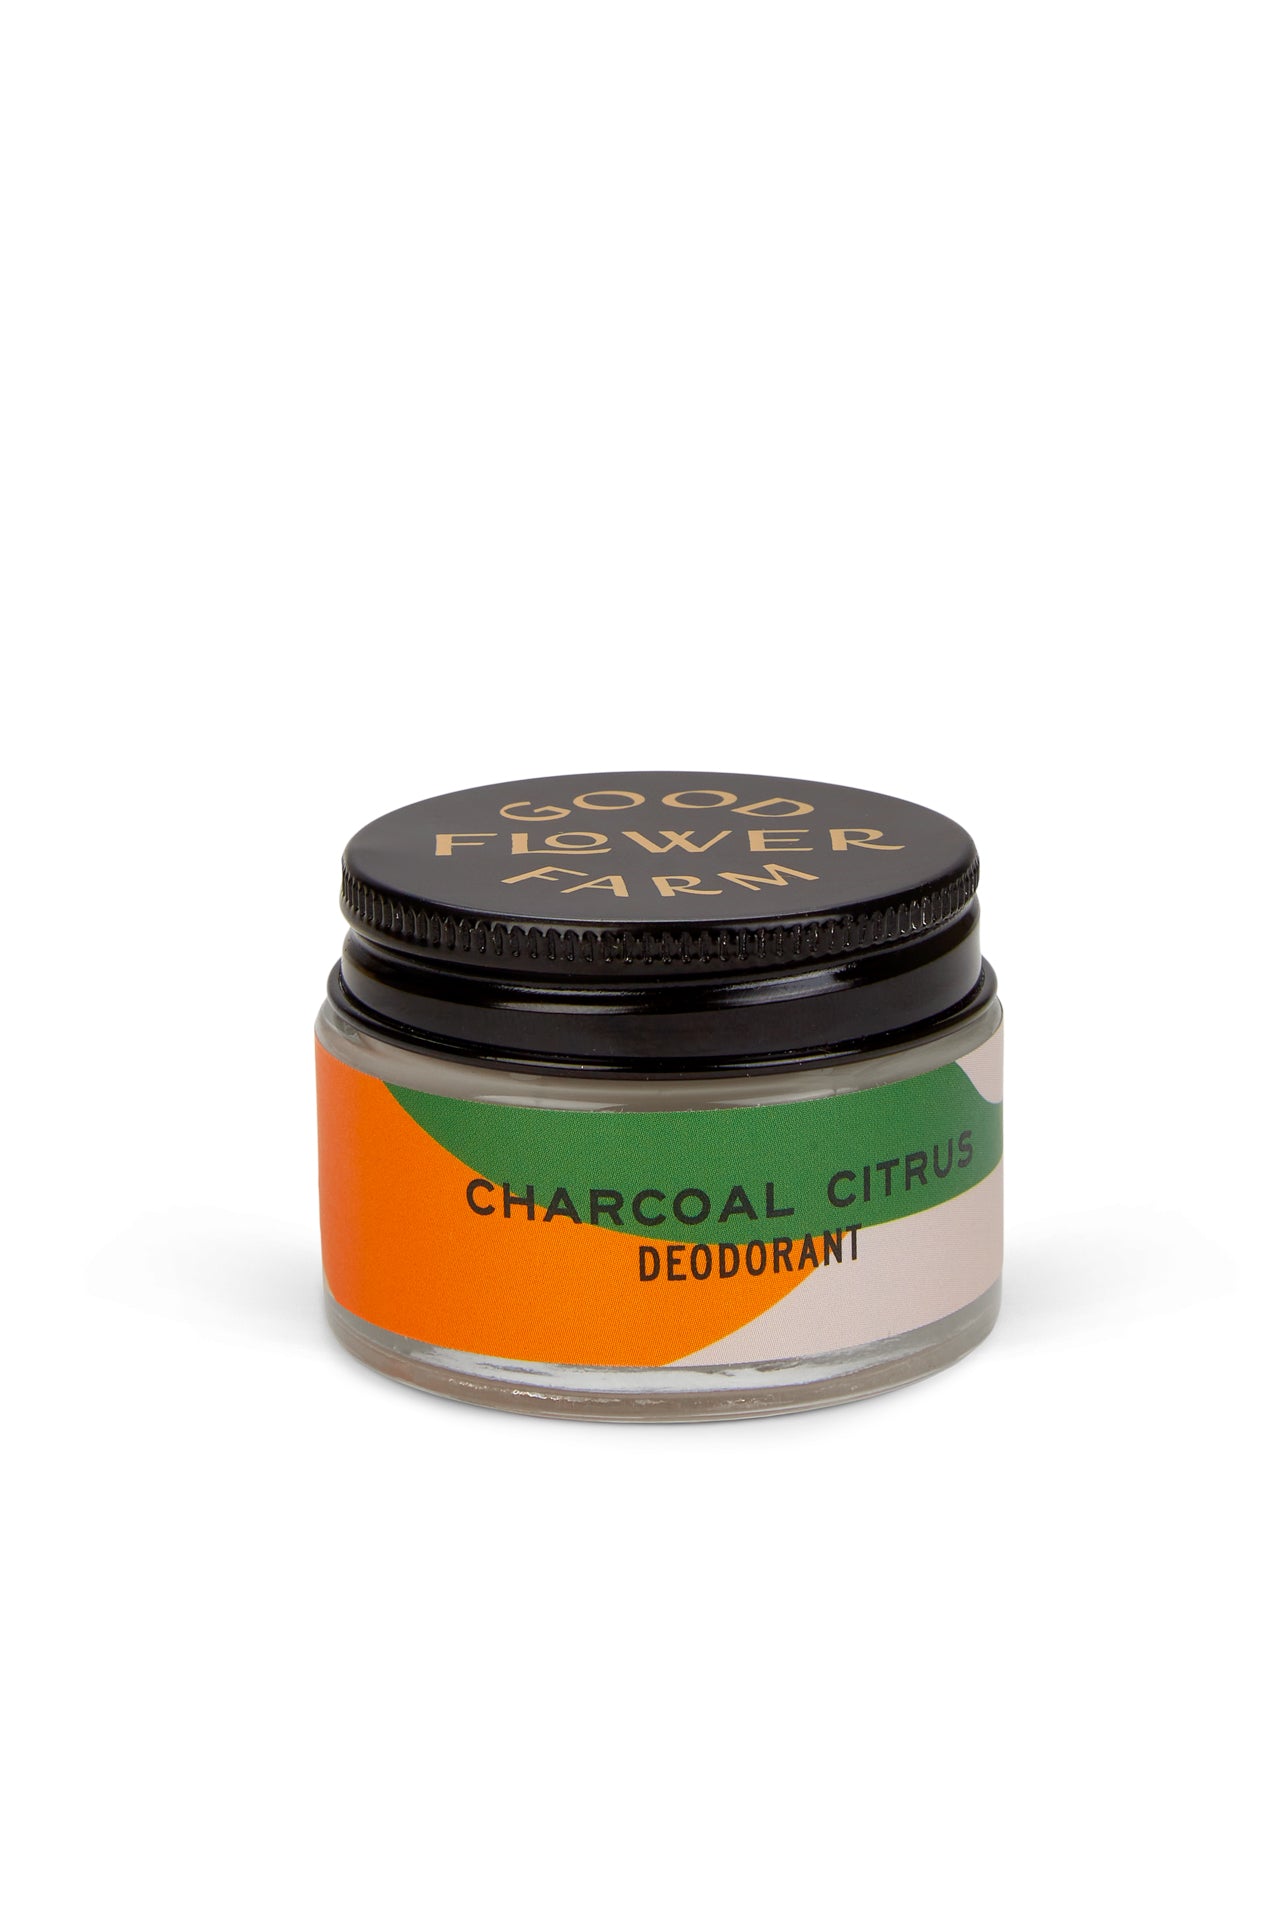 Charcoal Citrus Deodorant Jar